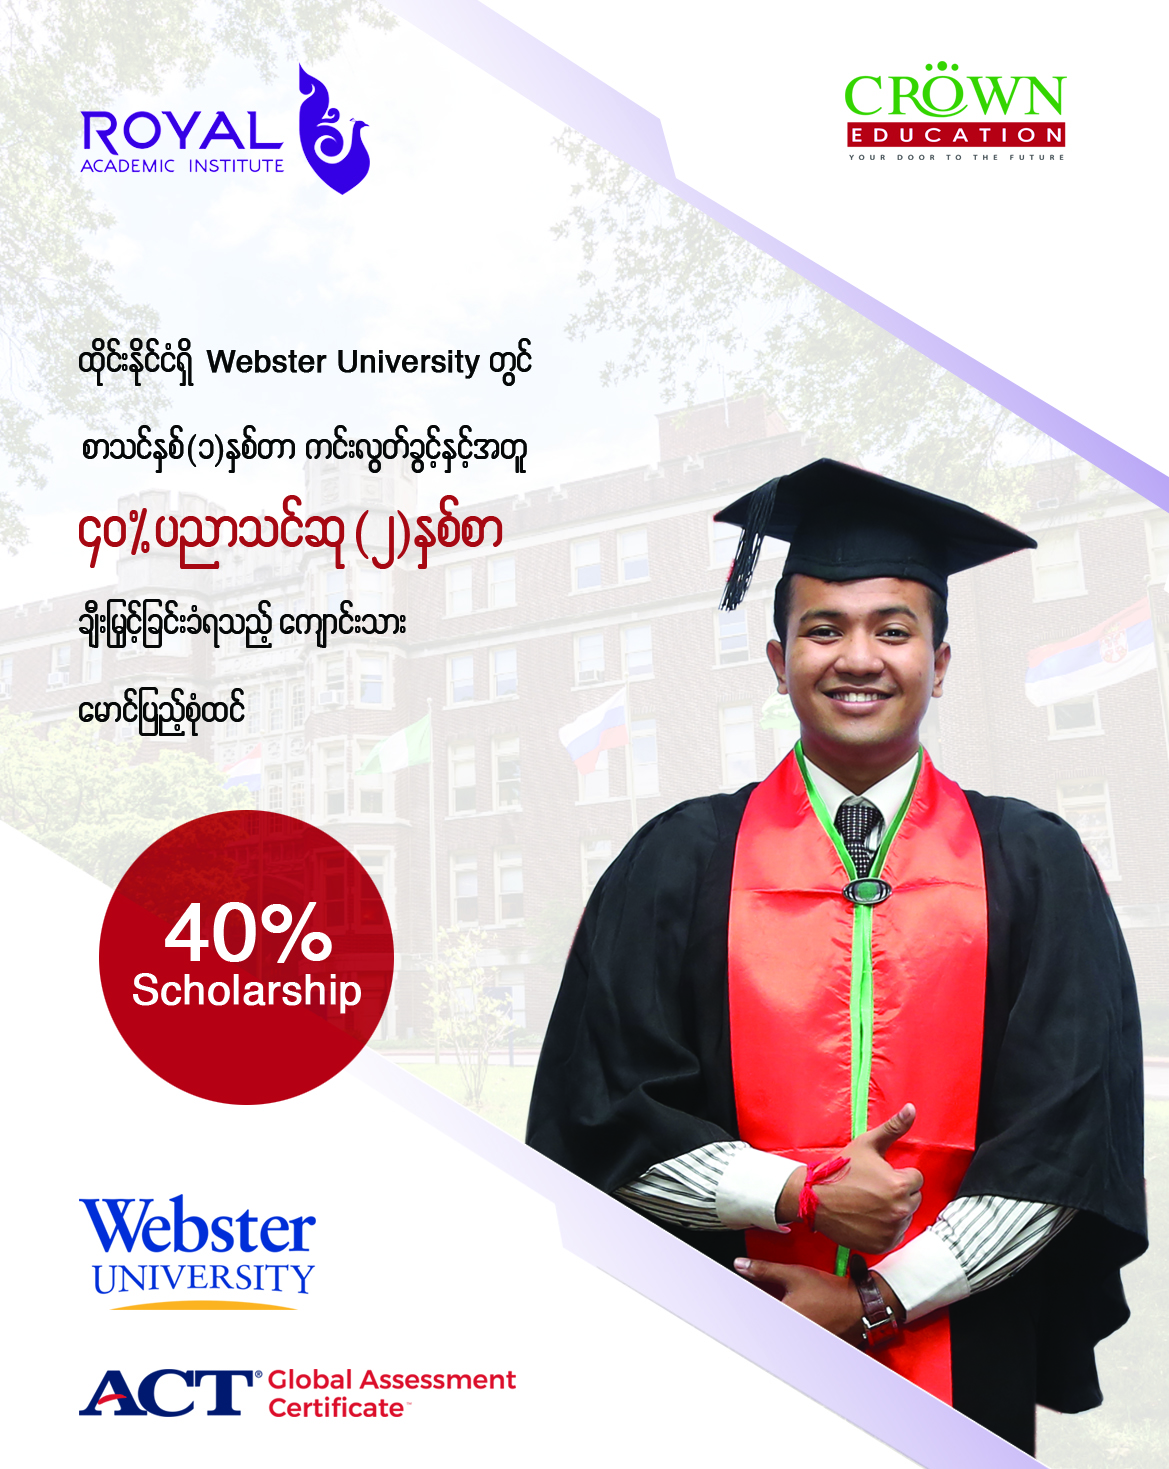 ထိုင်းနိုင်ငံရှိ Webster University တွင် စာသင်နှစ်(၁)နှစ်တာ ကင်းလွတ်ခွင့်နှင့်အတူ ၄၀% ပညာသင်ဆု(၂)နှစ်စာ ချီးမြှင့်ခြင်းခံရသည့် ကျောင်းသား မောင်ပြည့်စုံထင်